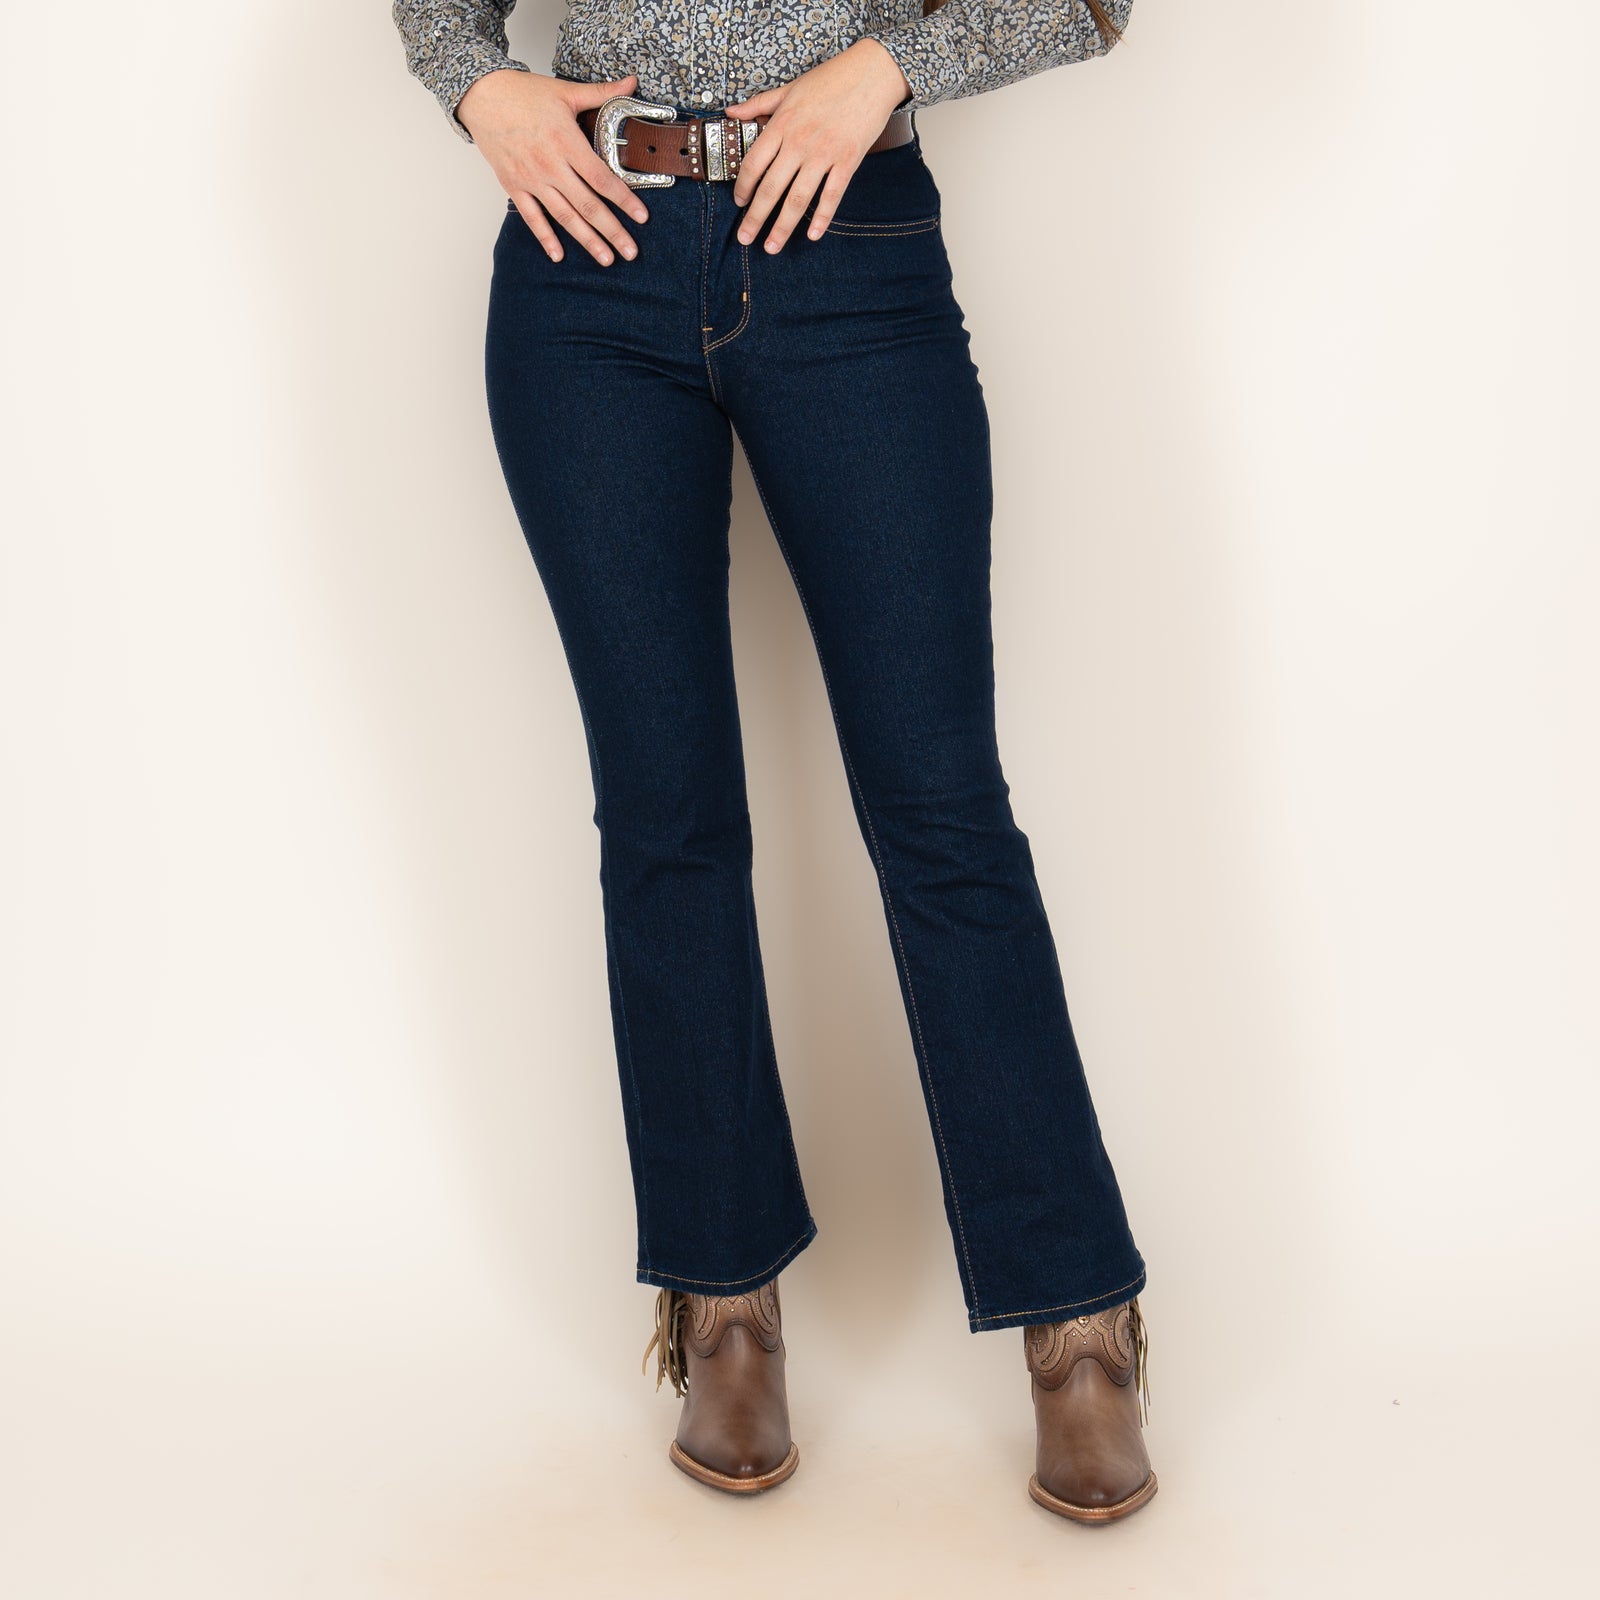 Jeans Wrangler Retro Slim Dama – Botas Chicho